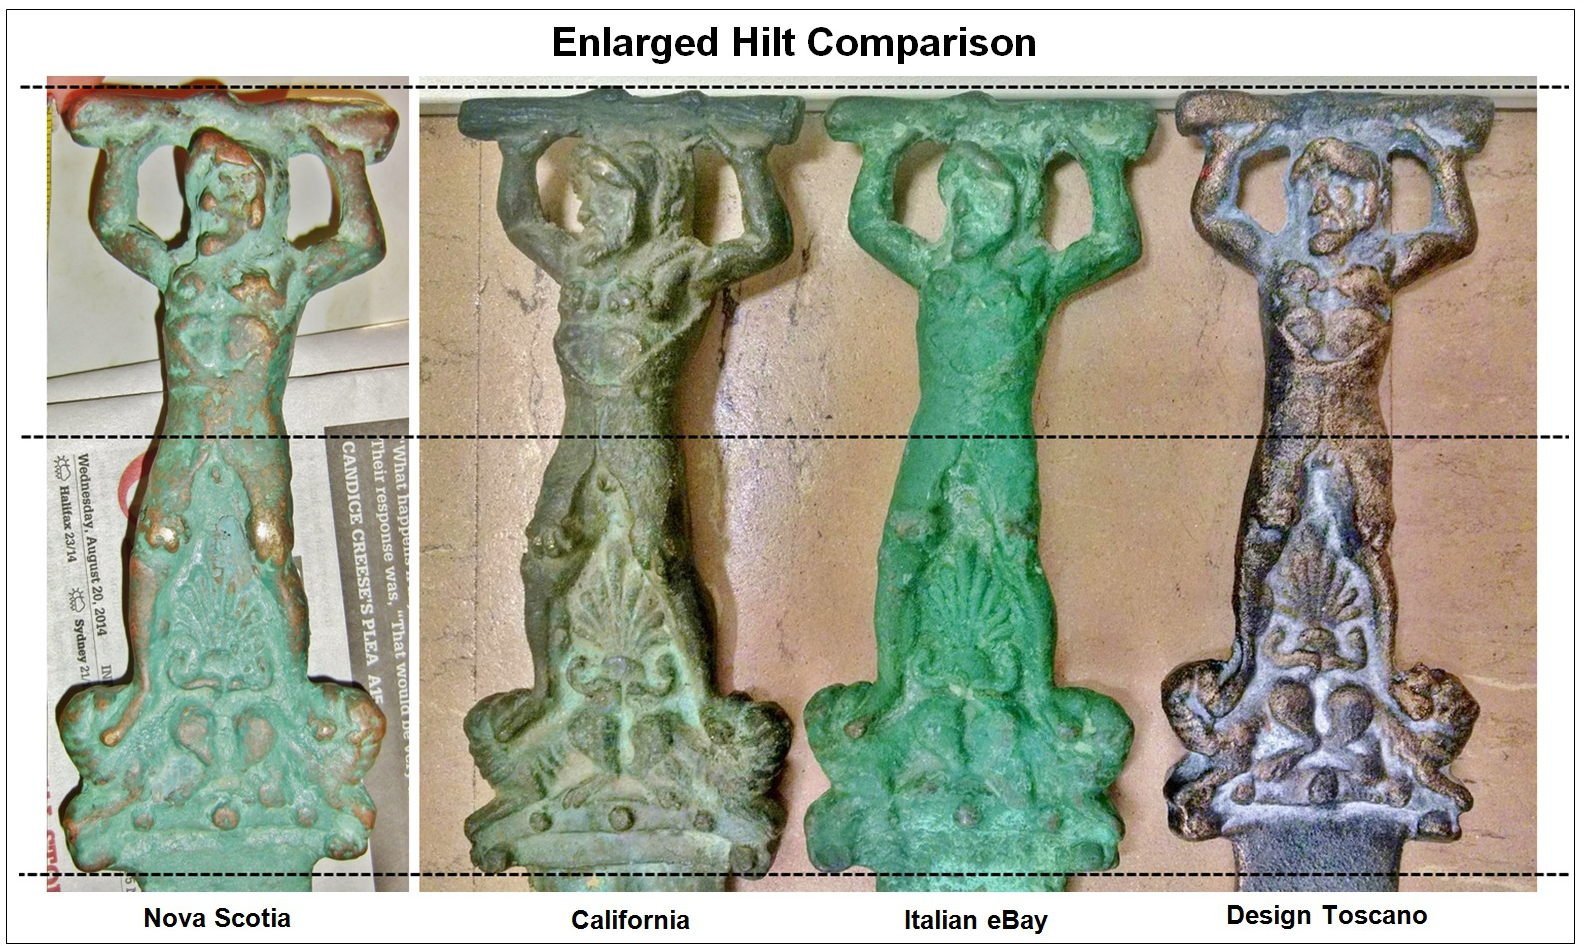 hilt-comparison